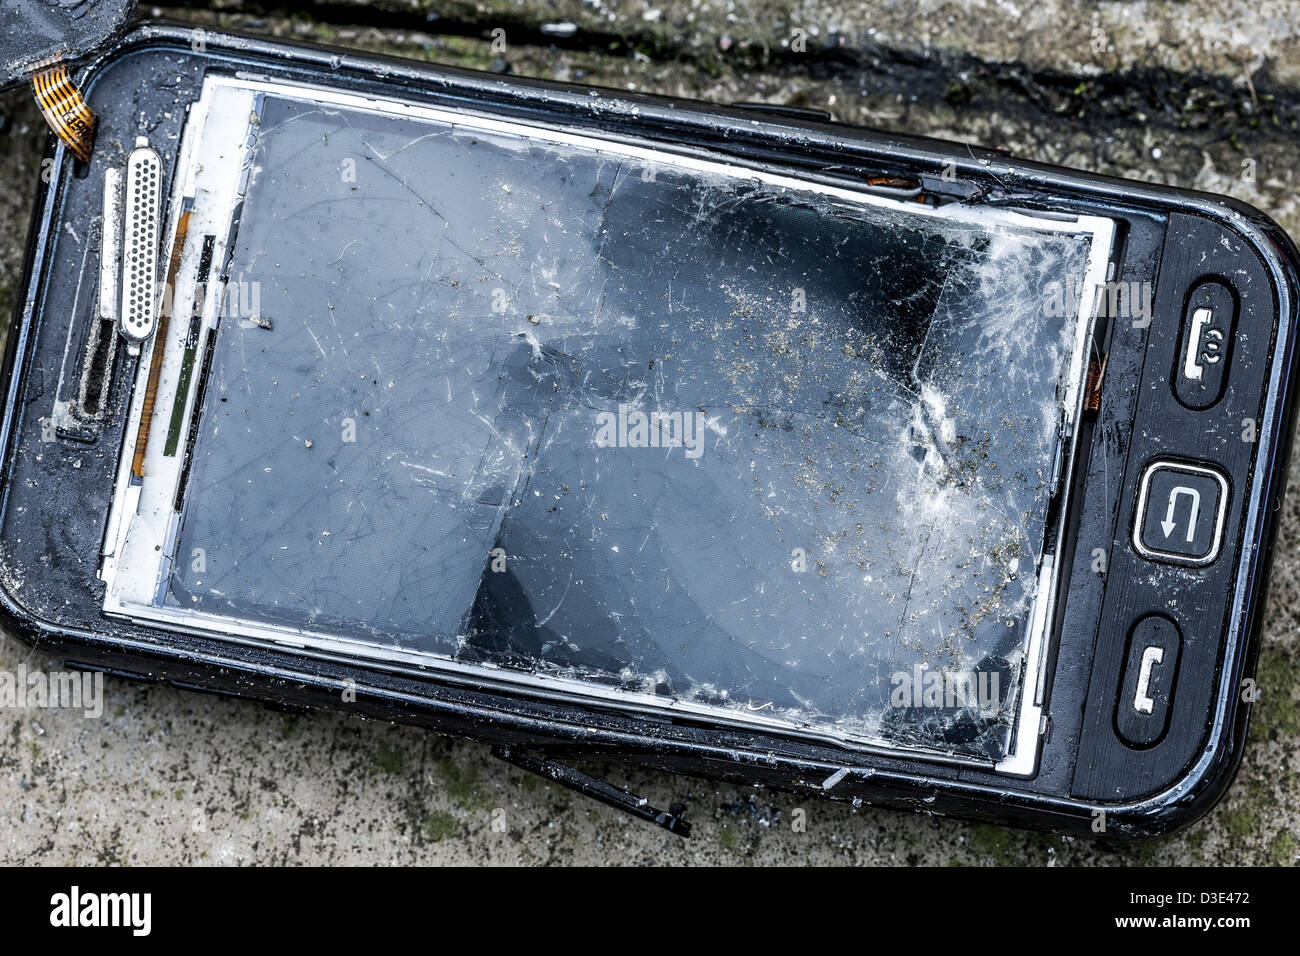 Rotto, distrutto, rovinato mobile smartphone, telefono cellulare Foto Stock